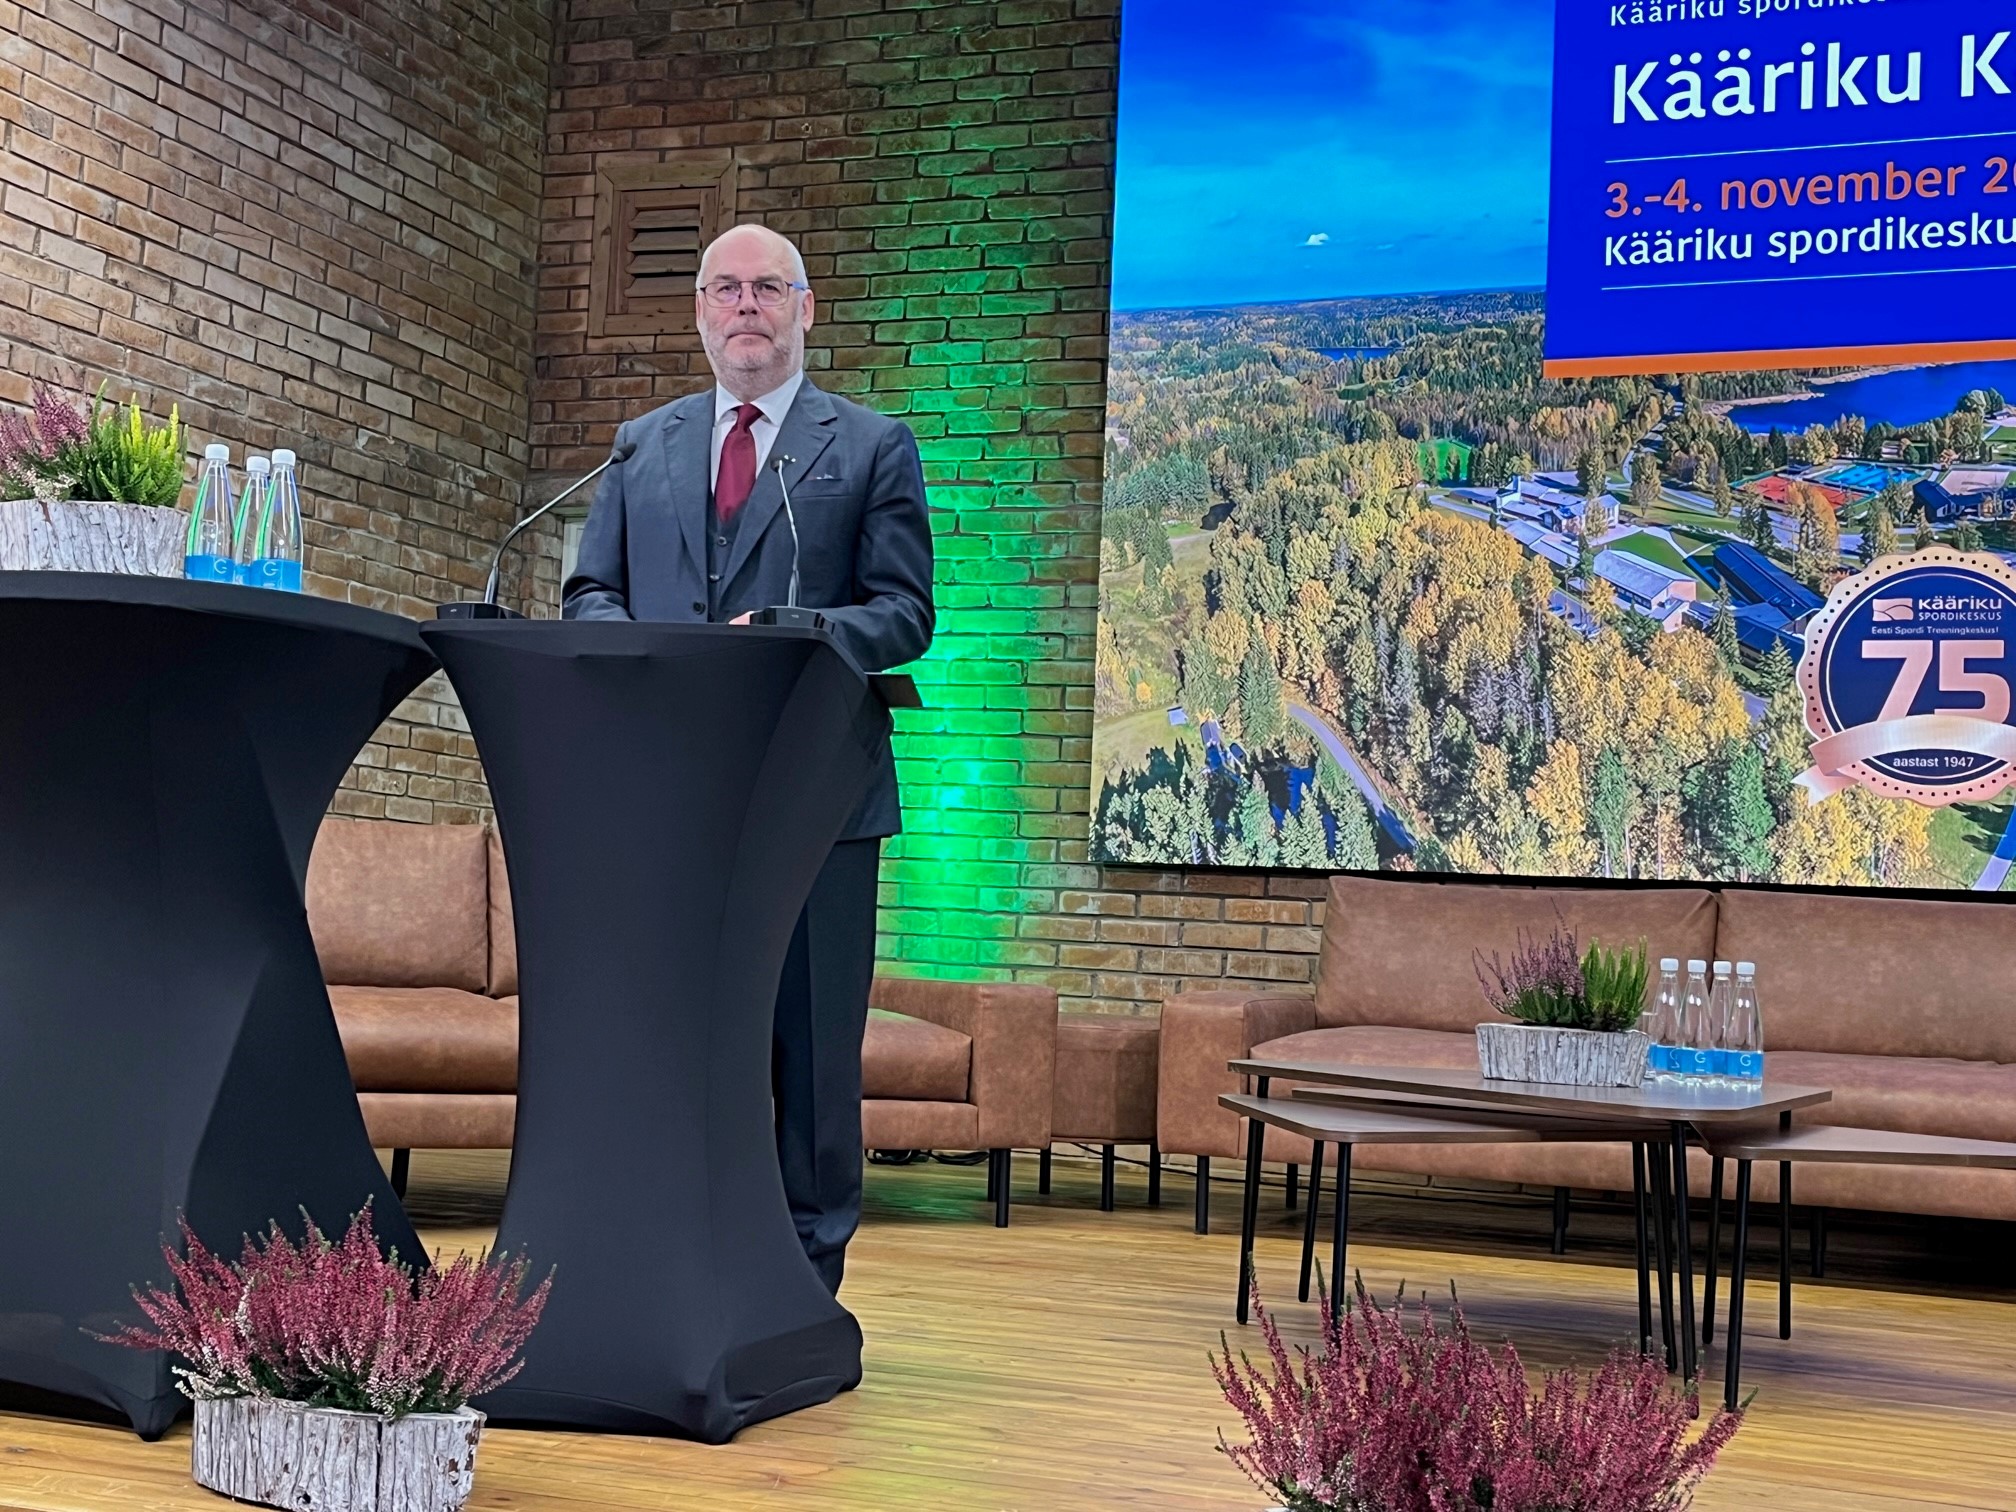 President Alar Karis: Eestil on pikemalt ja tervemalt elamise valdkonnas palju pakkuda